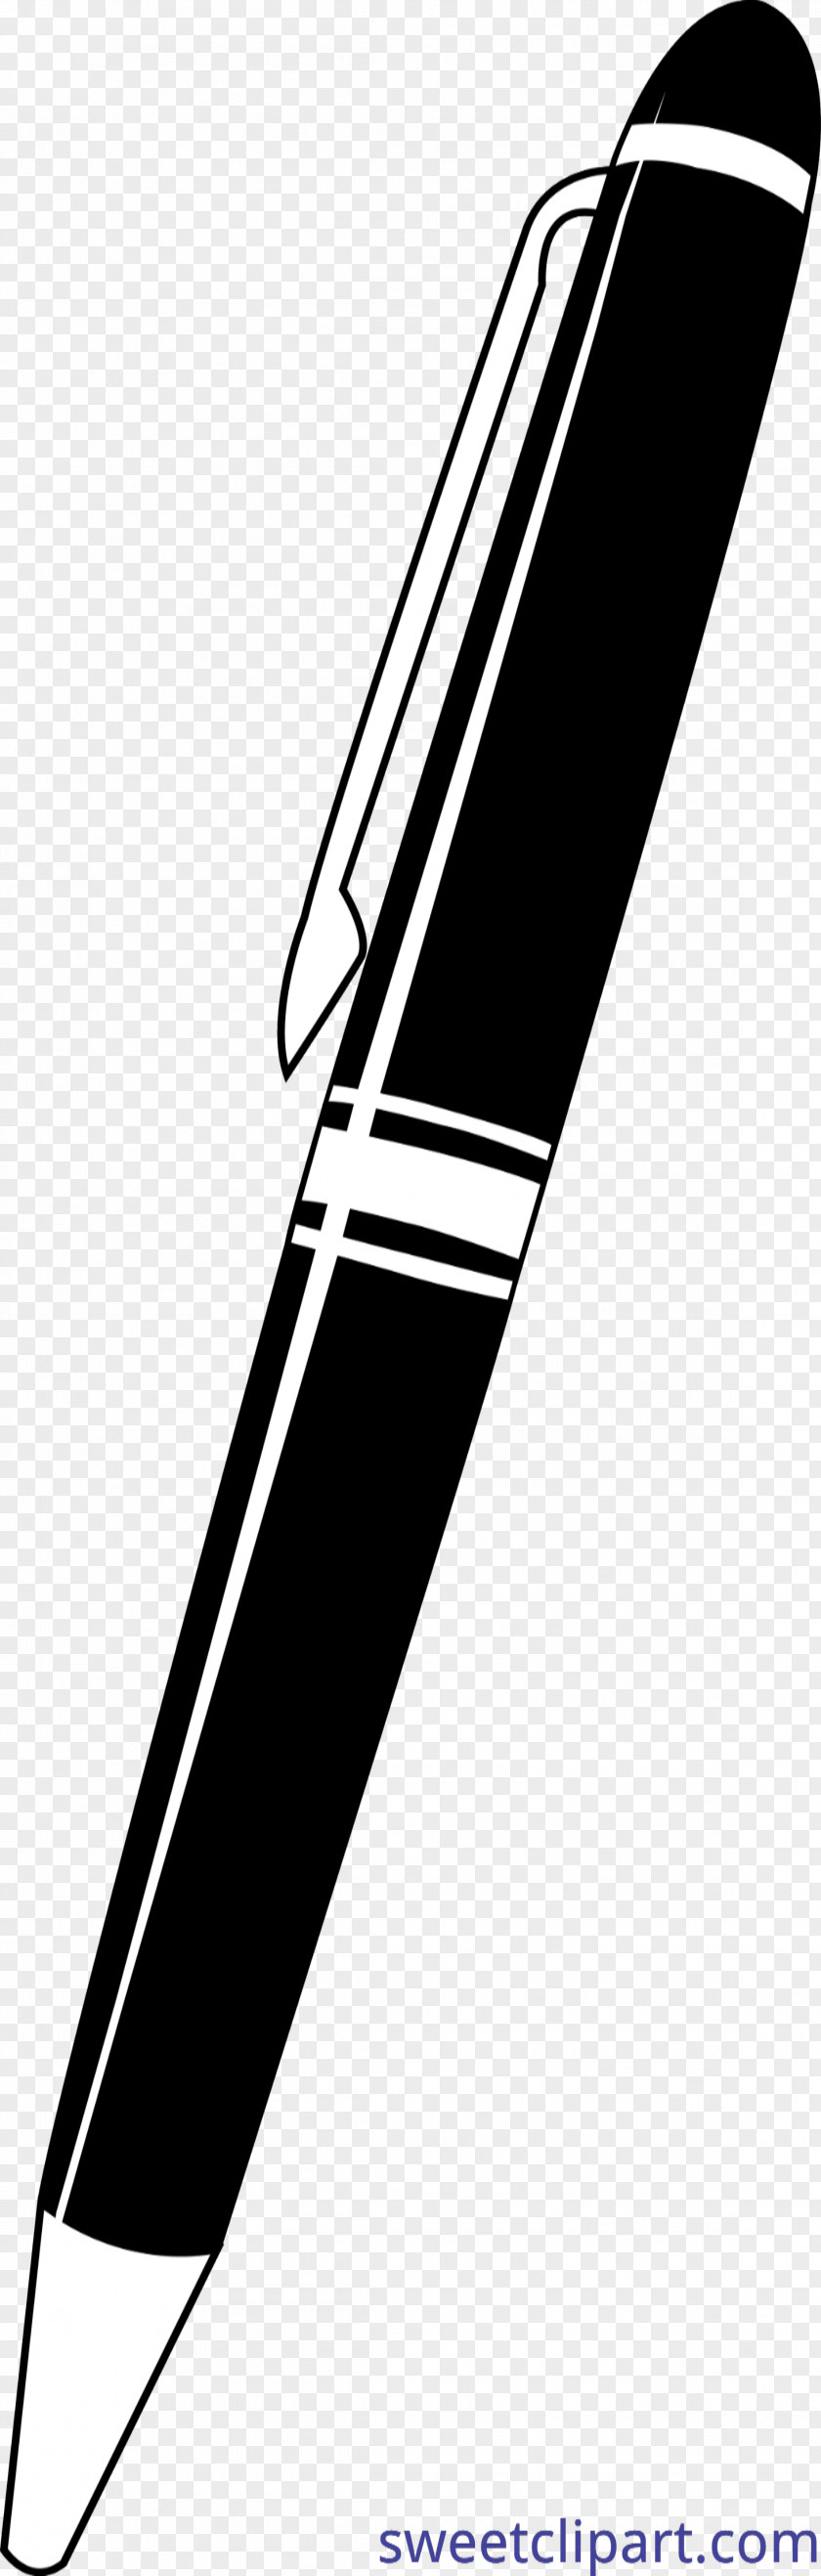 Pencil Clip Art Pens Ballpoint Pen Image PNG